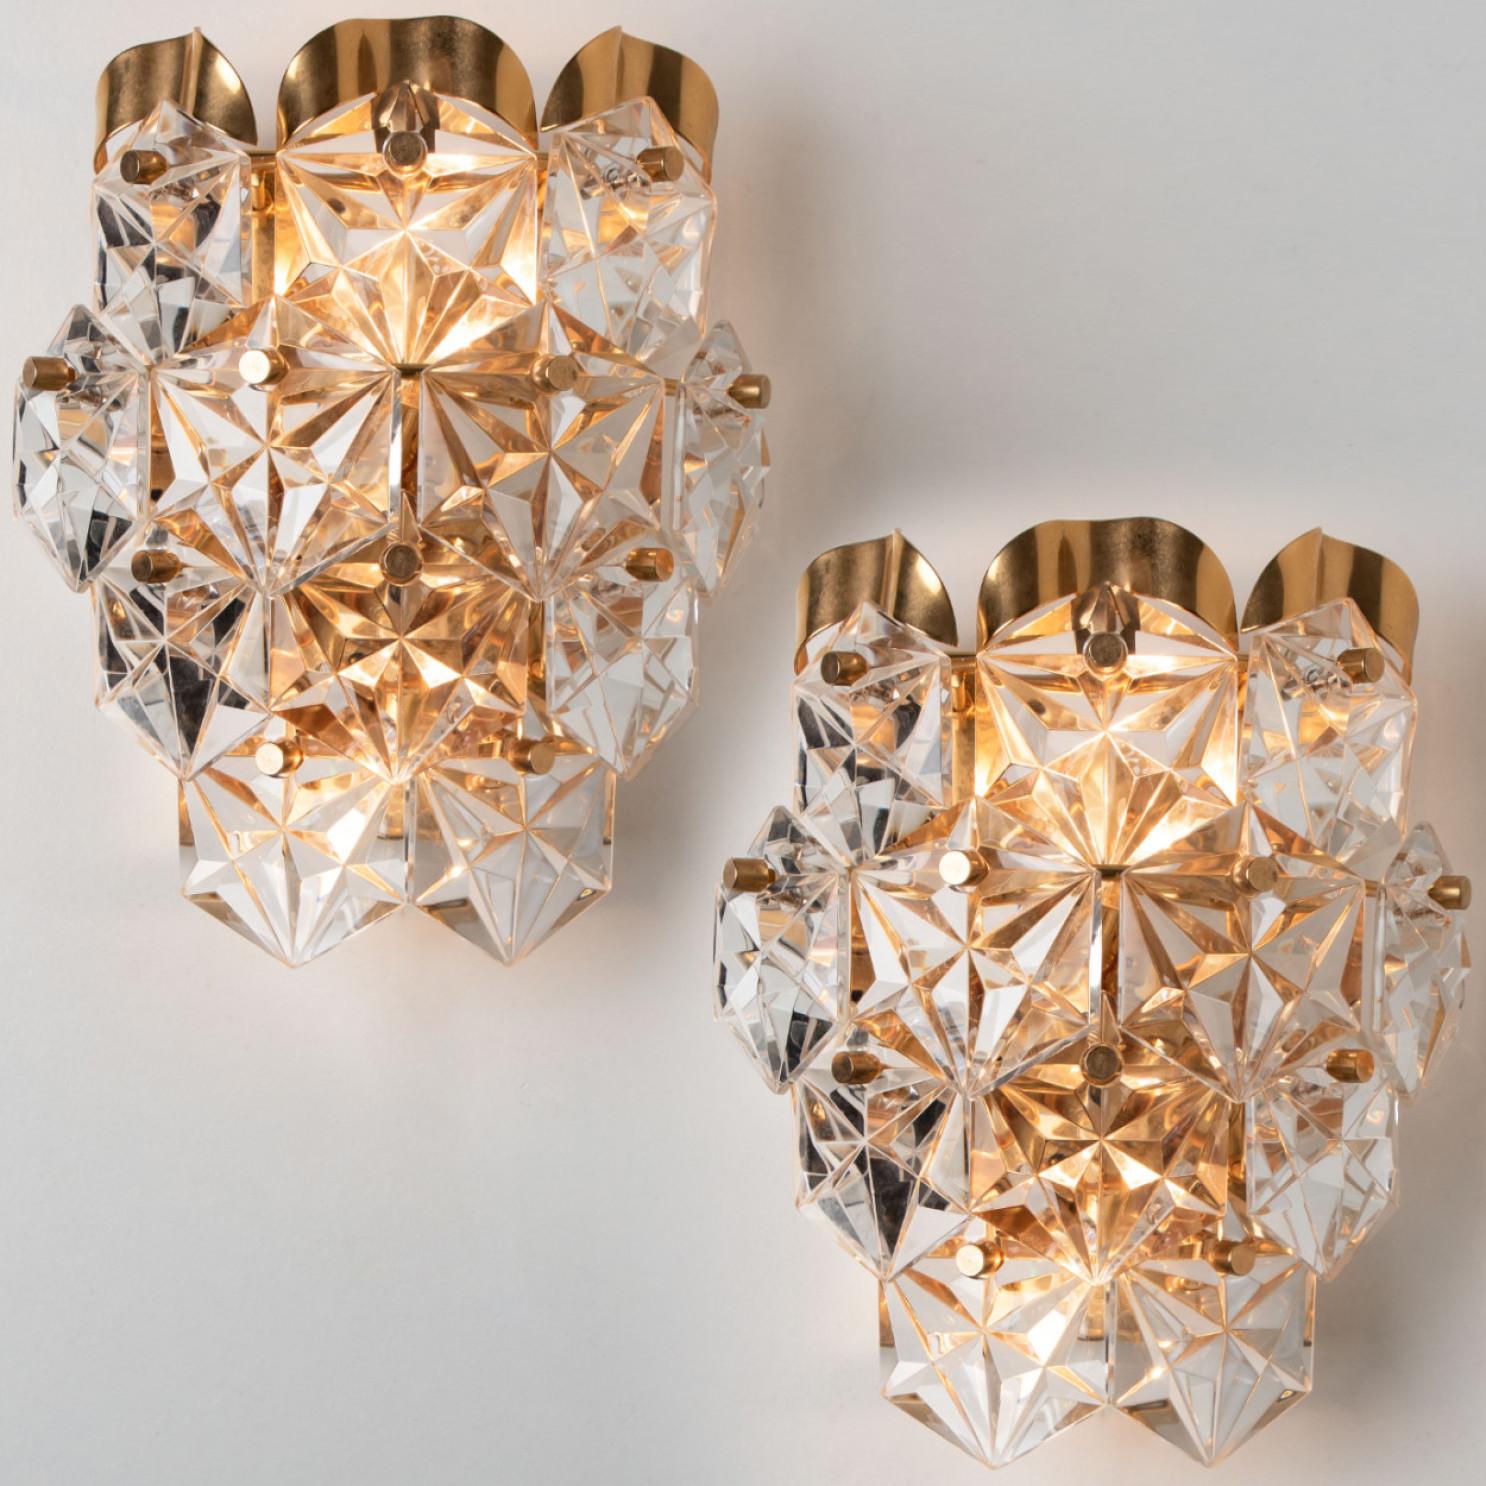 Une luxueuse paire de cadres plaqués or et d'épaisses appliques en cristal de diamant du célèbre fabricant Kinkeldey. Fabriqué en Allemagne vers 1970. (fin des années 1960, début des années 1970)
Deux sources lumineuses. Des luminaires très